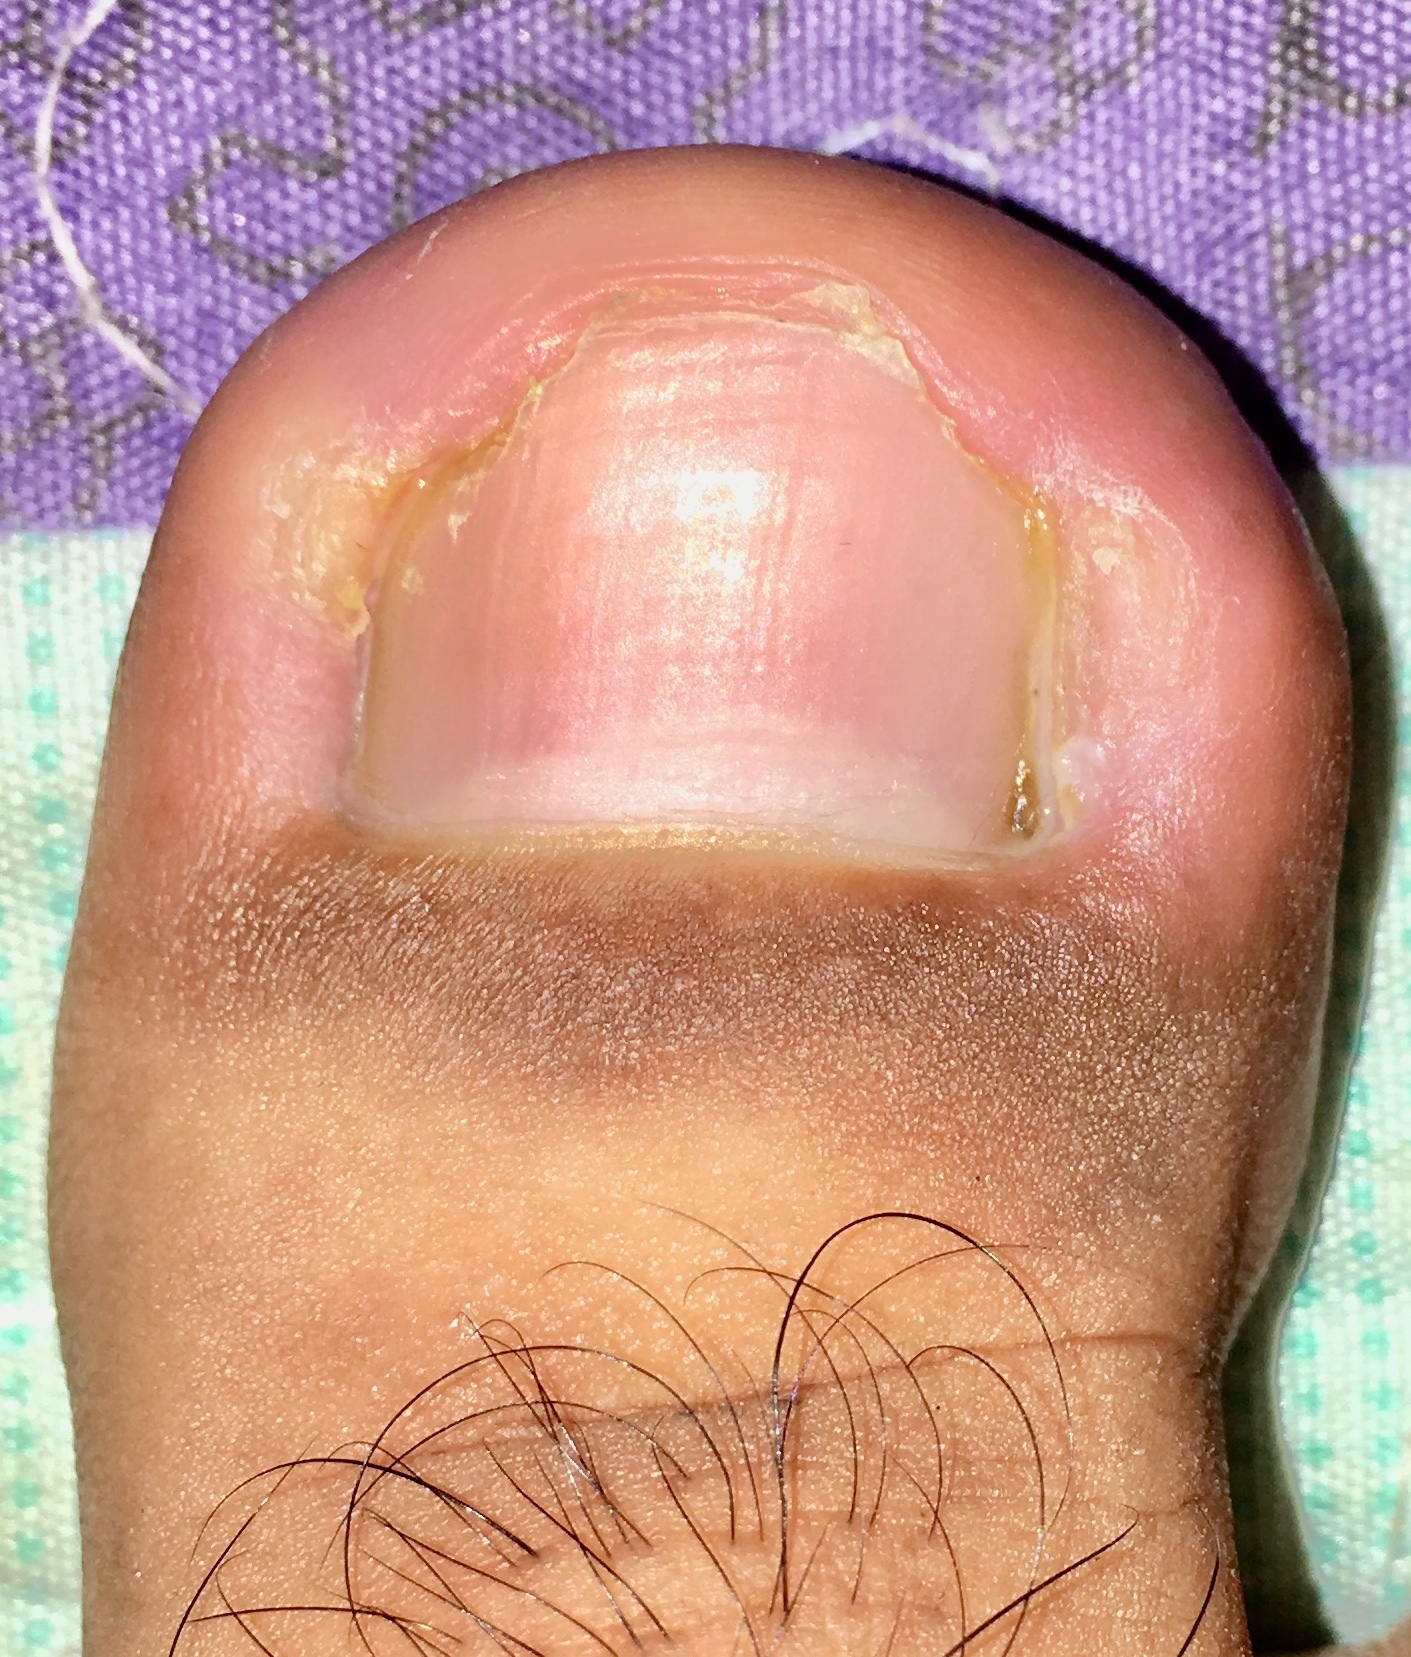 onychomycosis toes icd 10 hogyan lehet diagnosztizálni köröm gomba lábakon